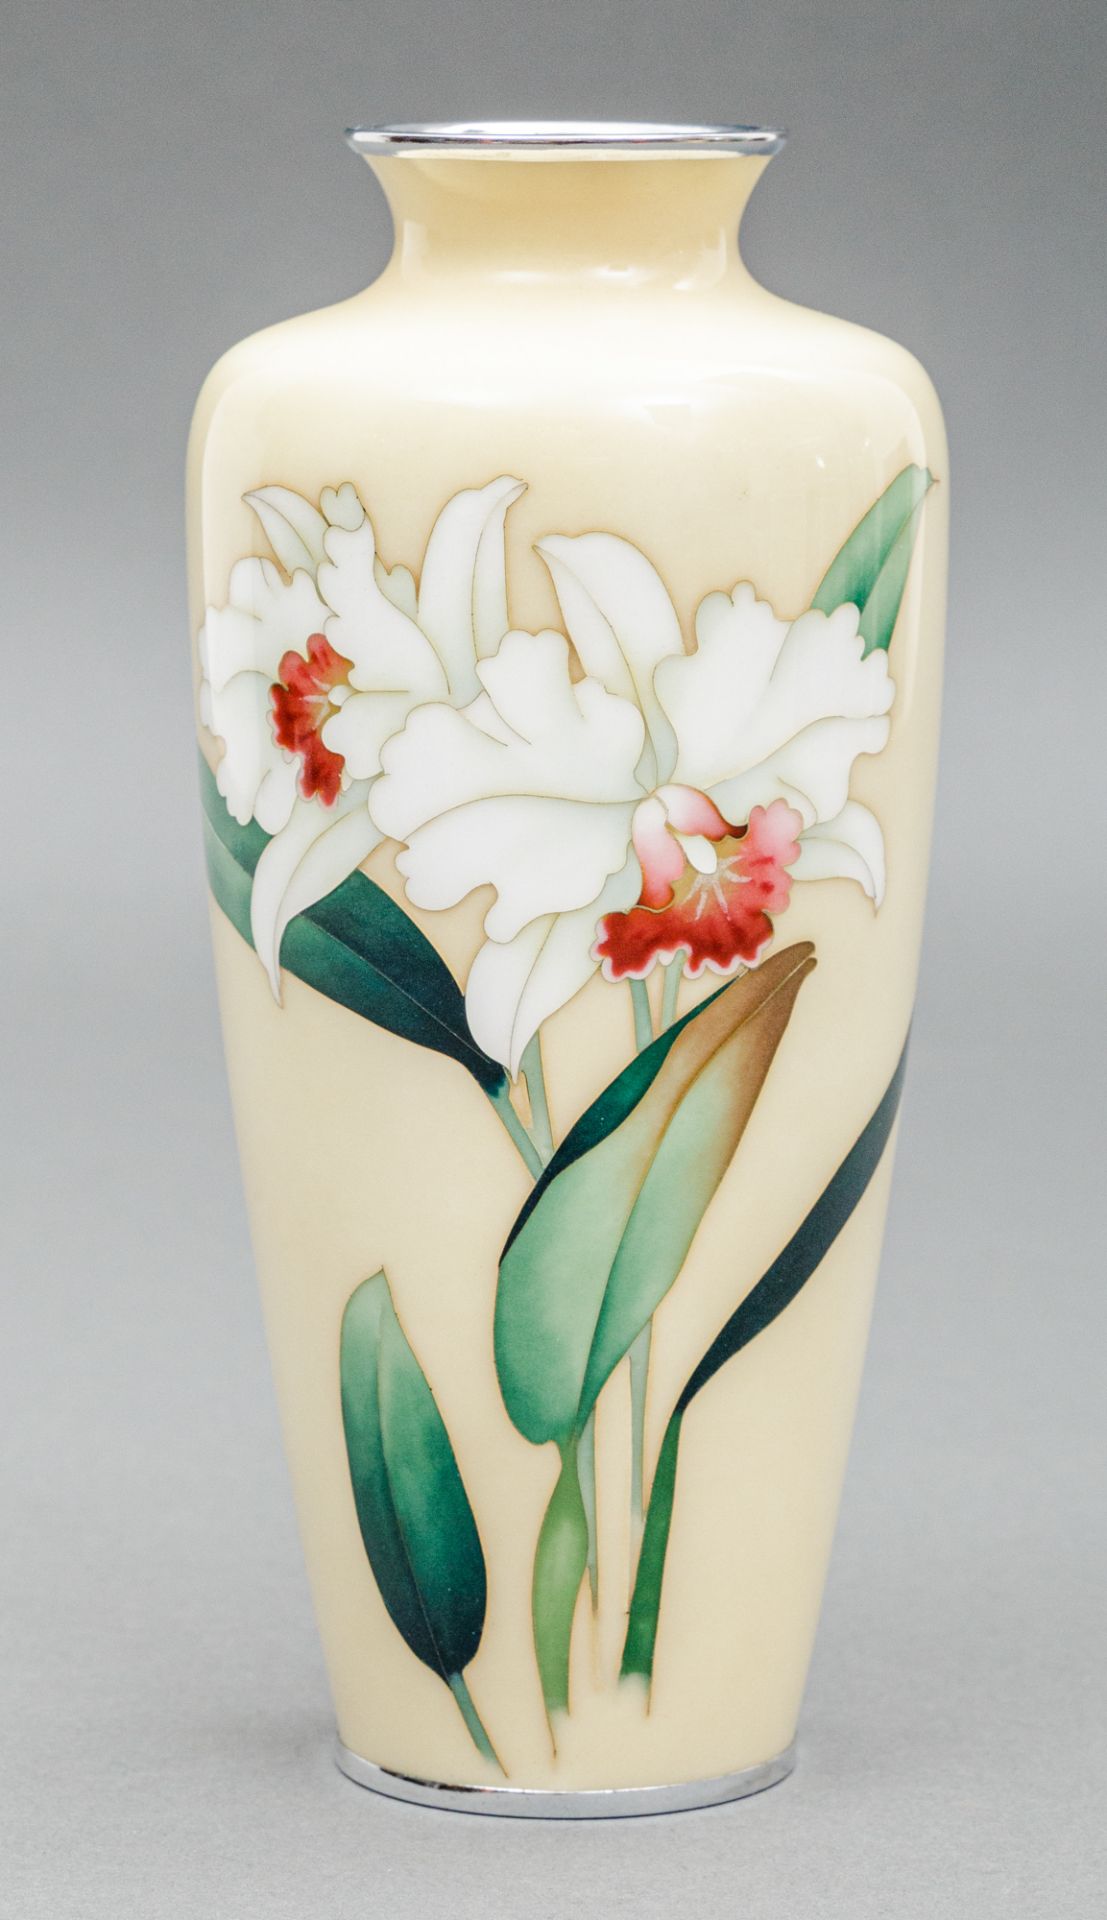 Cloisonné Vase, Japan, Ando Cloissoné Company (aktiv 1880-heute), Anfang 20 Jh.